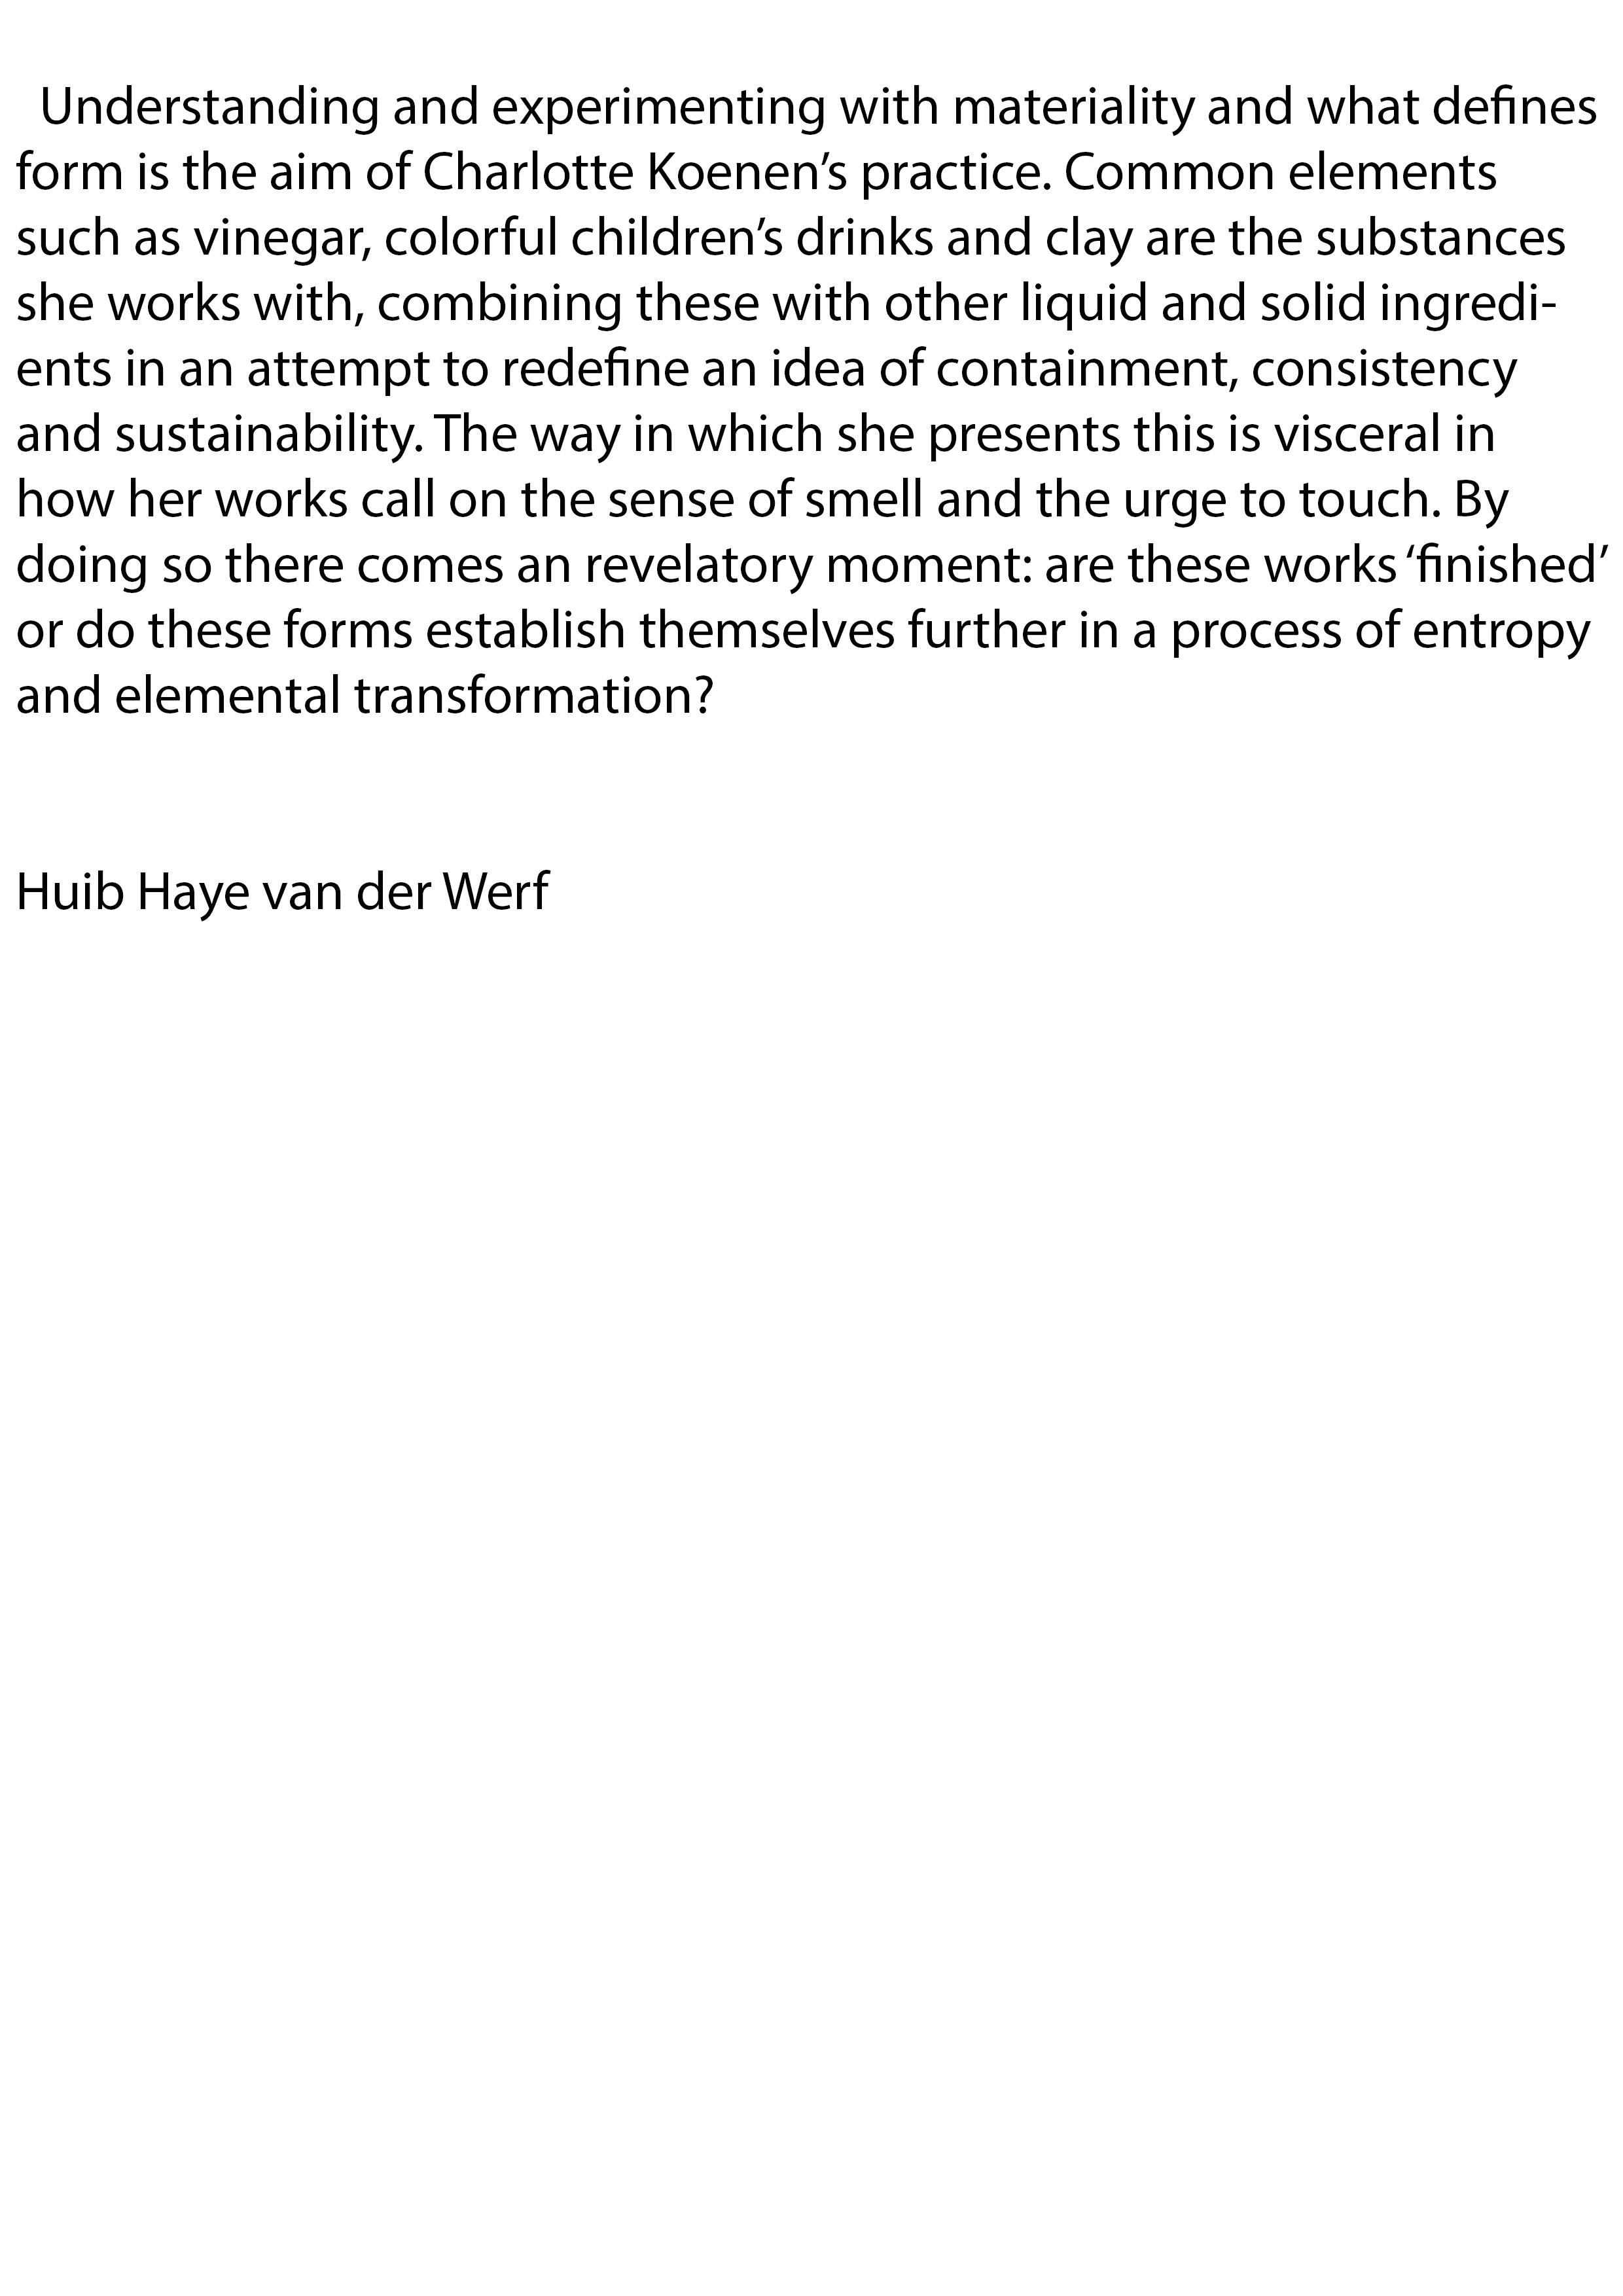 Text from Huib Haye van der Werf